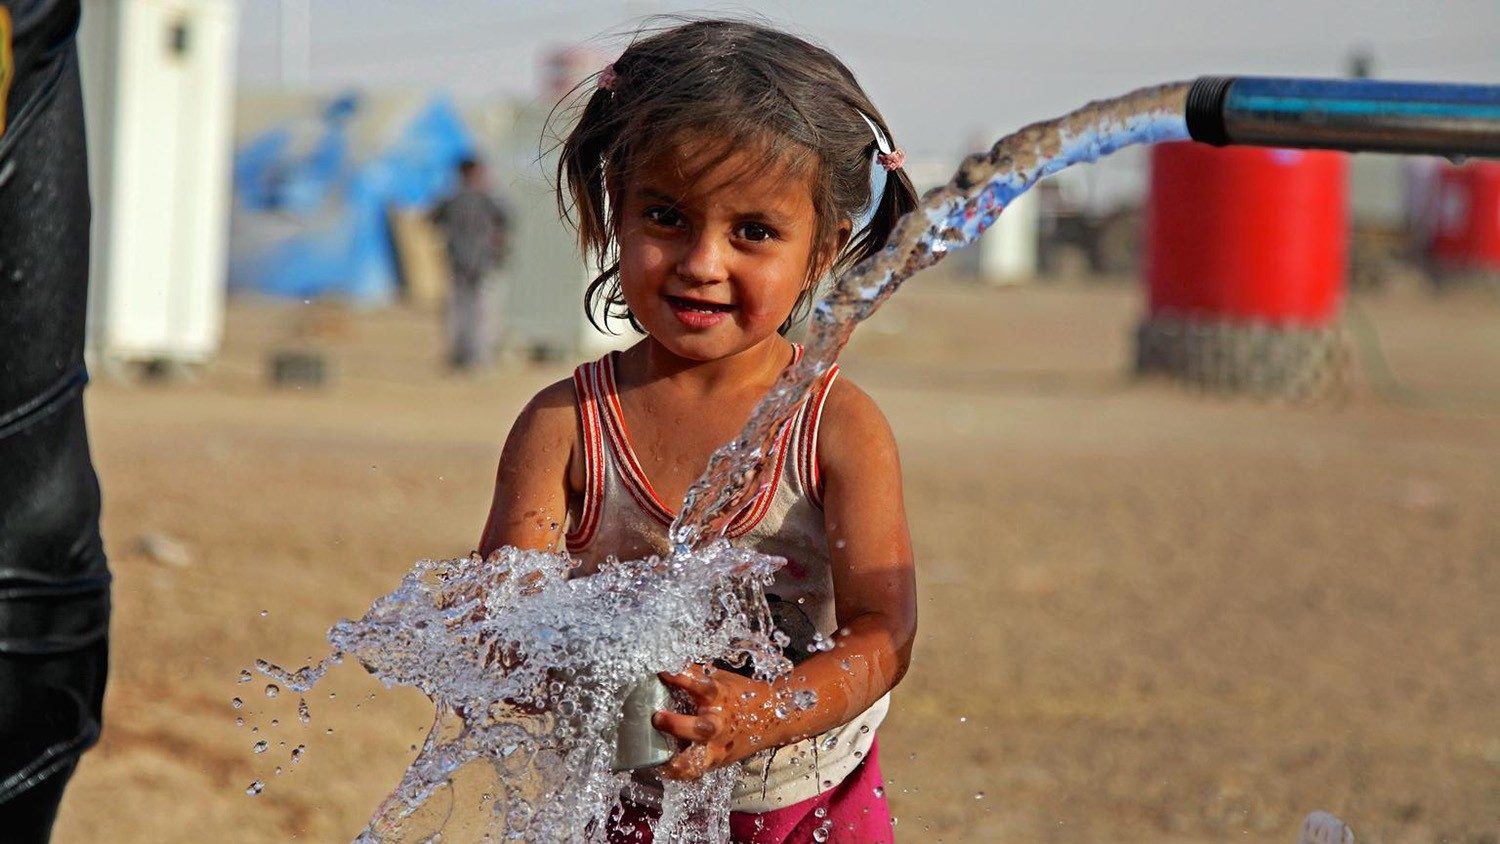 Para nosotros los creyentes, el agua no es mercancía" - Vatican News